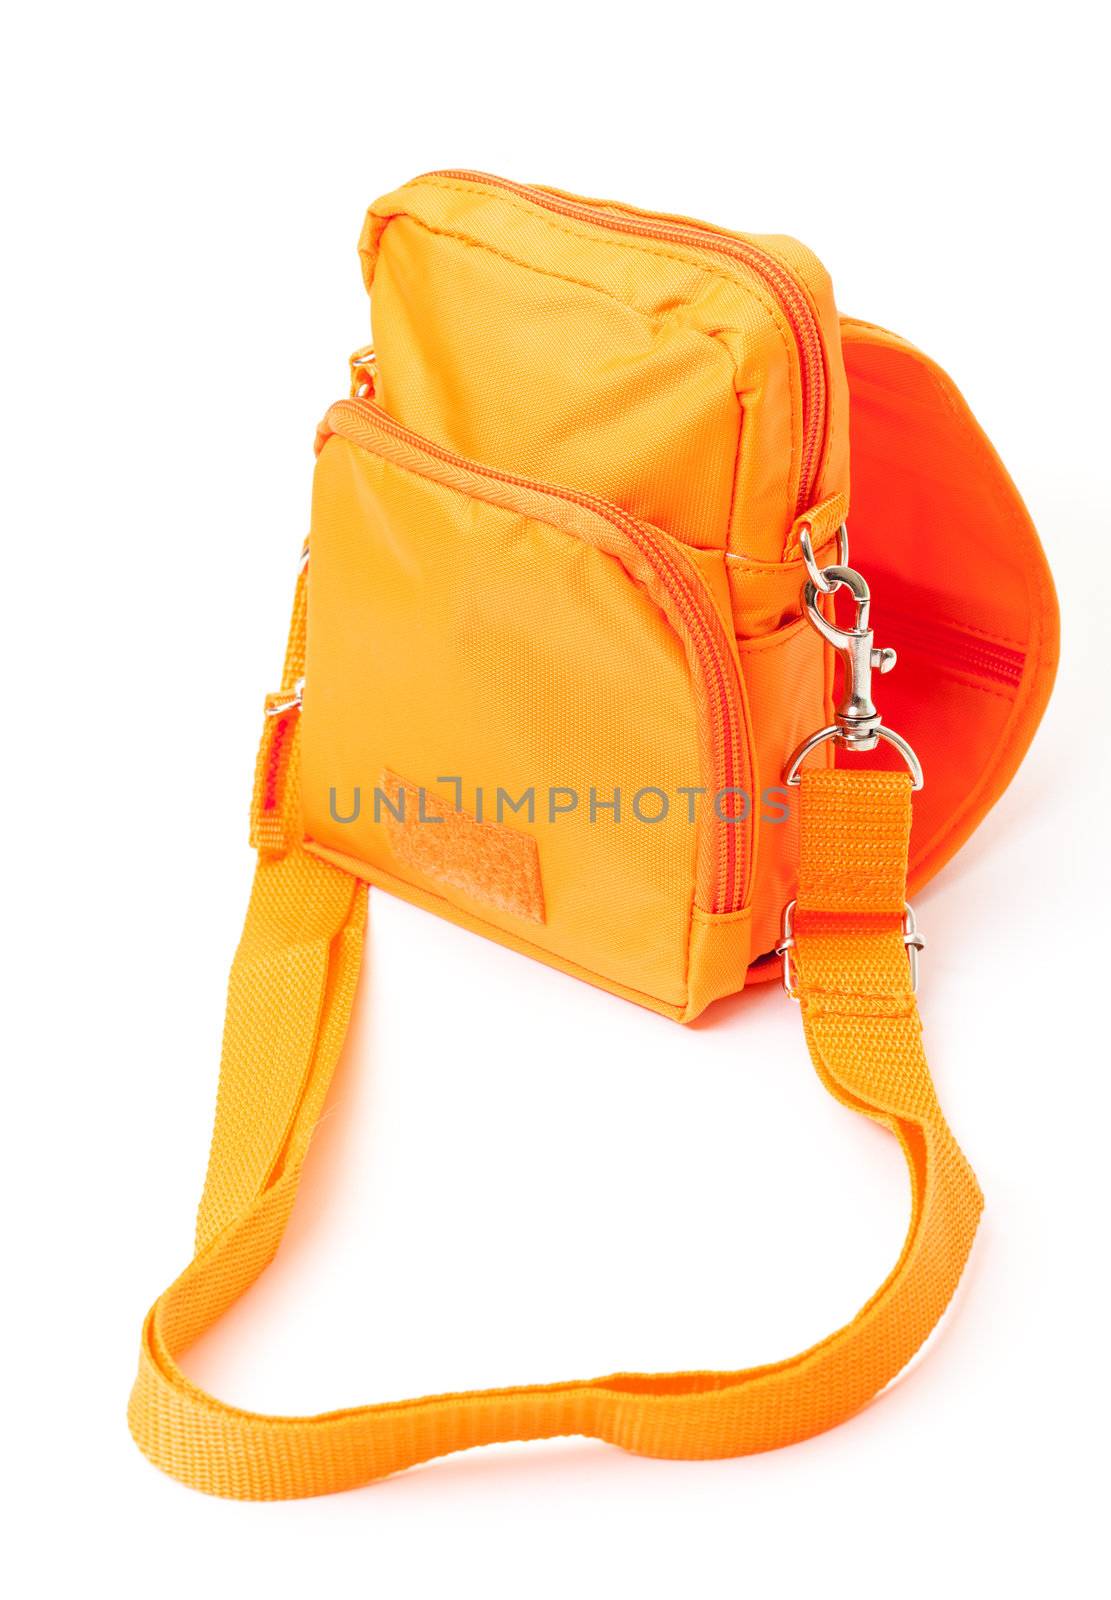 Orange Shoulder bag, on white background